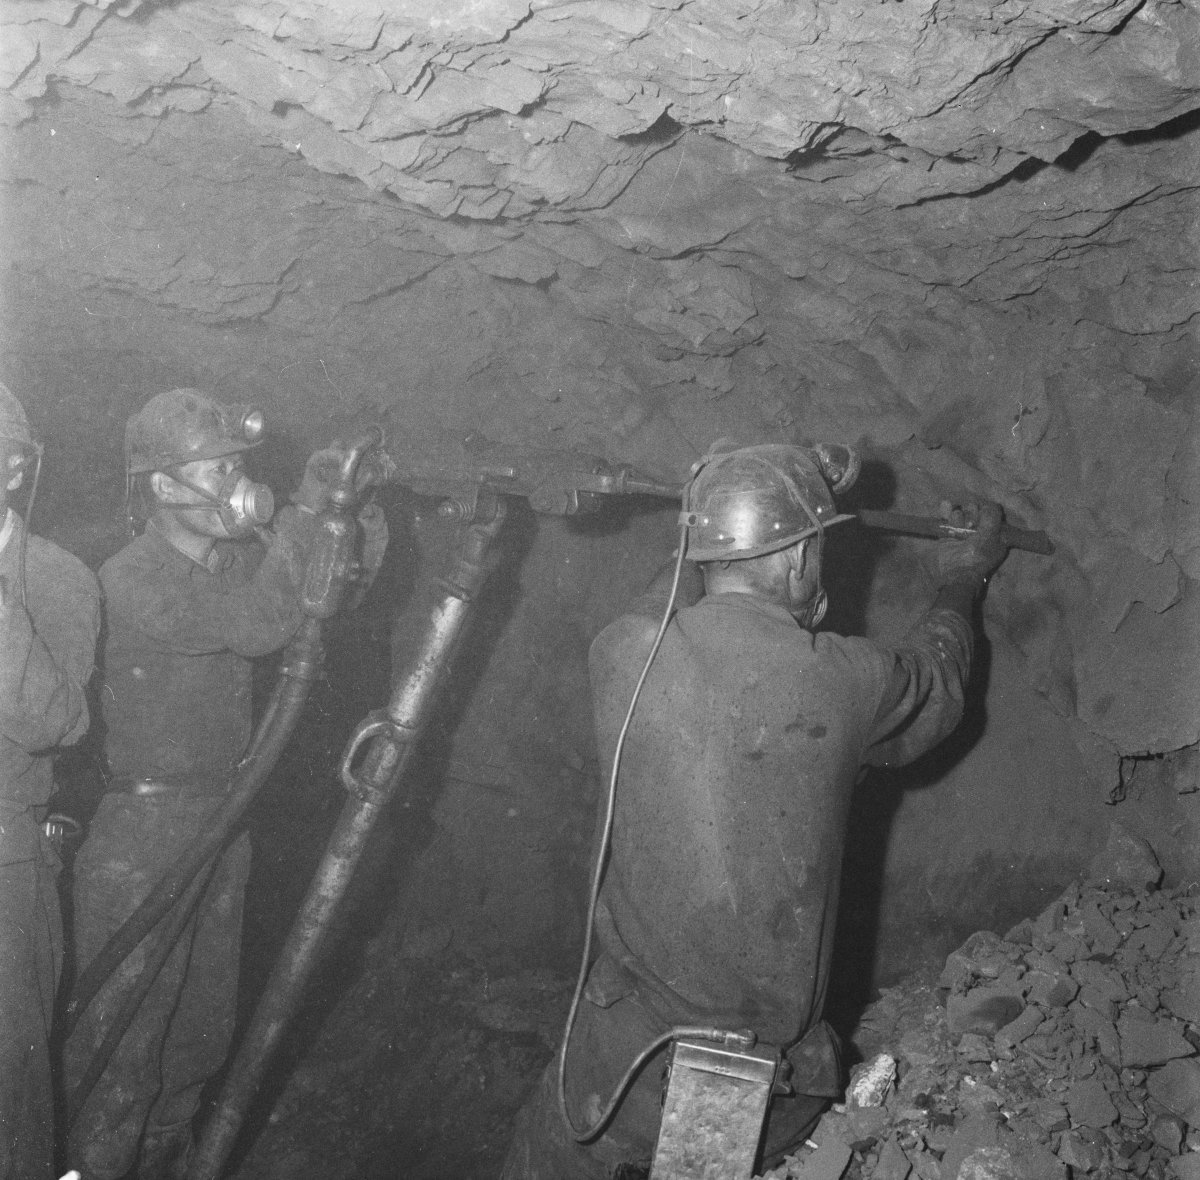 1962년 강원 삼척시 도계광업소에서 광부들이 석탄을 캐기 위해 지하 갱도를 뚫고 있다. 국가기록원 제공